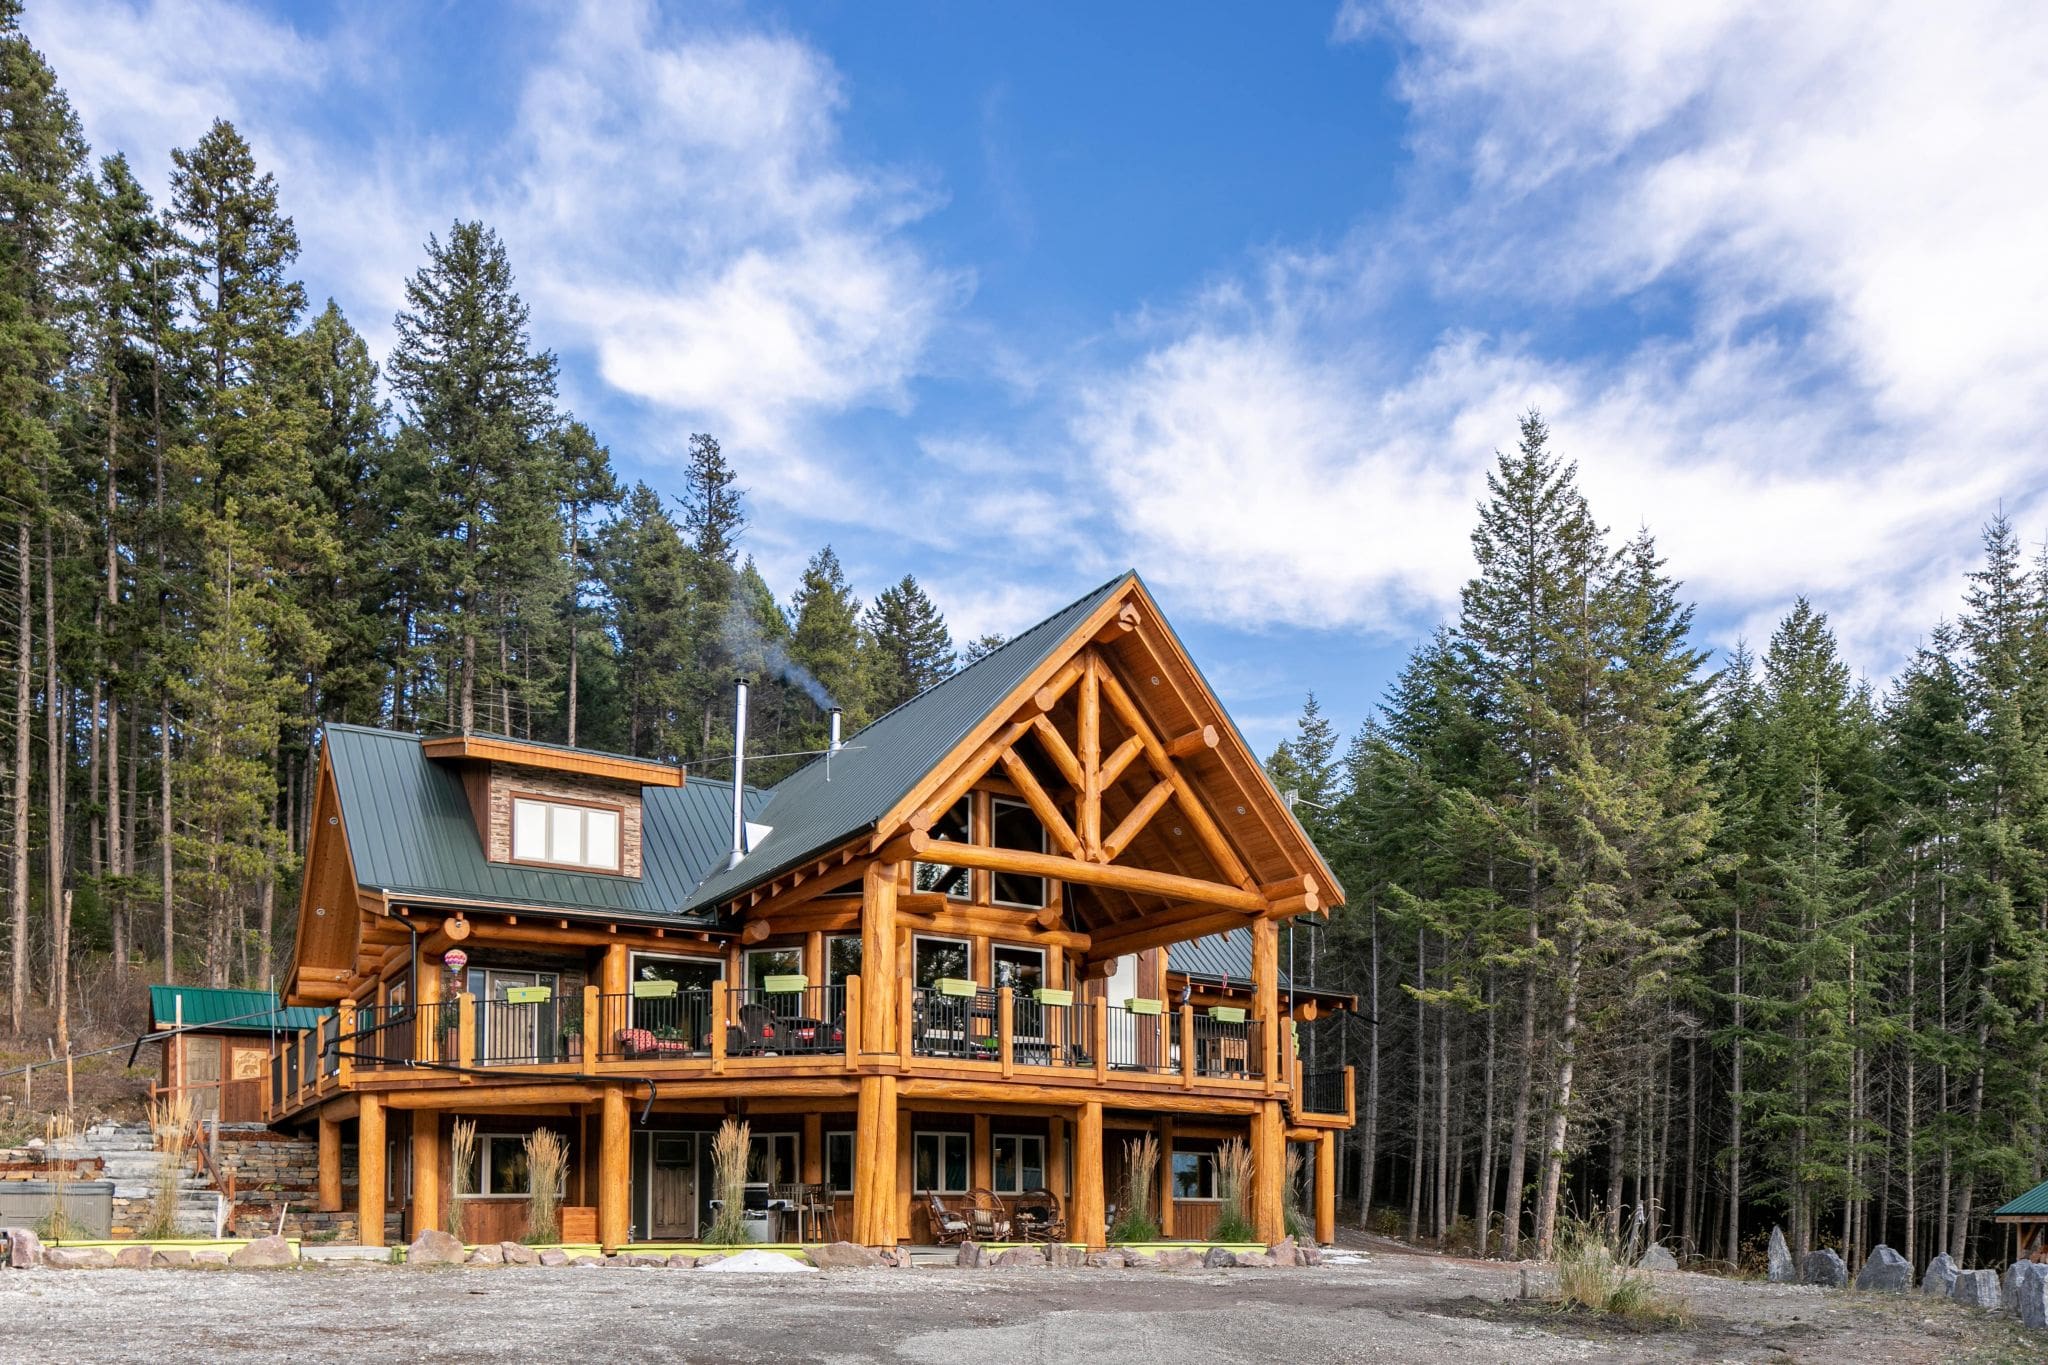 Design Process for Custom log home and timber frame home.